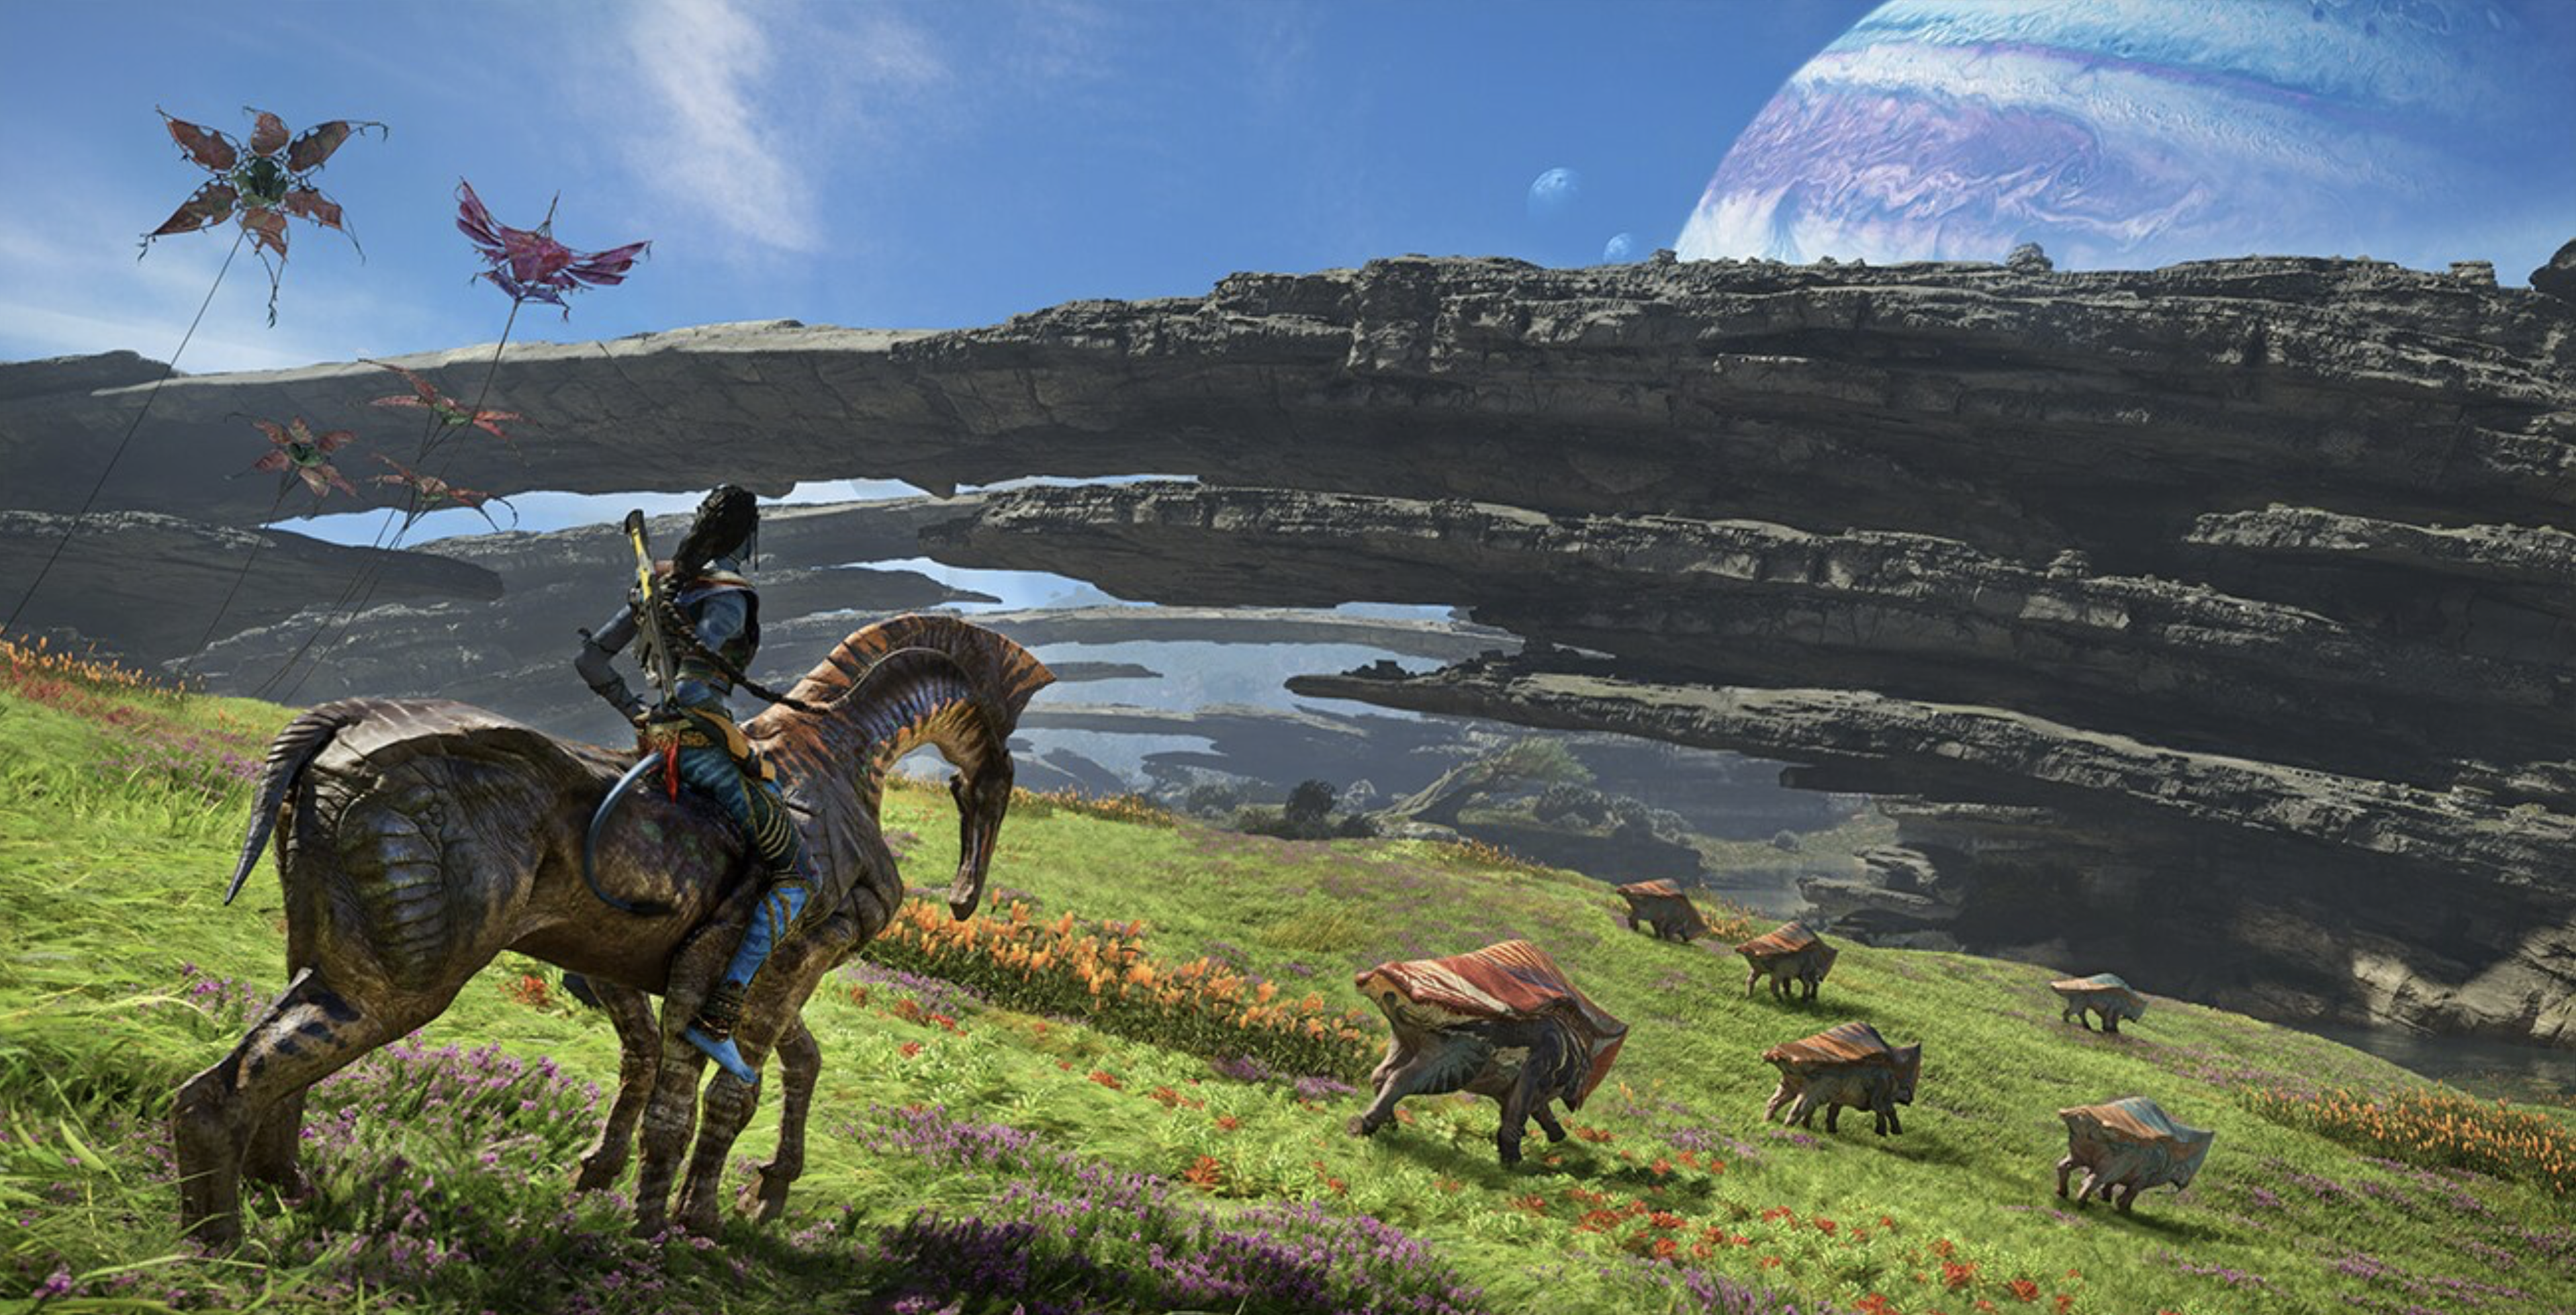 X35 Earthwalker Avatar: Frontiers of Pandora